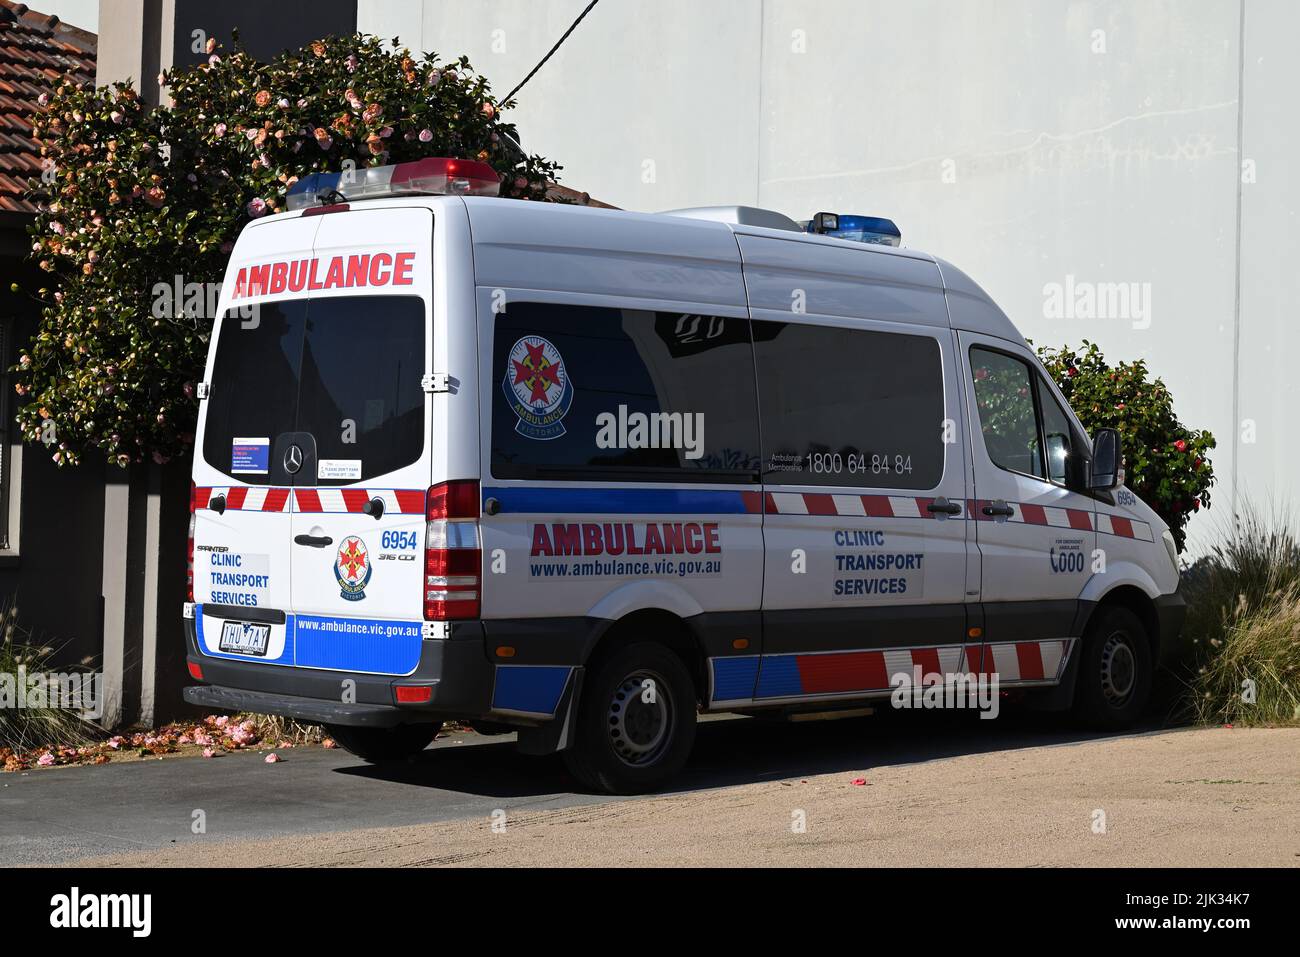 White Ambulance Victoria Clinic Transport Services Vehicle, ein Mercedes-Benz Sprinter-Van, der auf einem Hof vor einem Gebäude abgestellt wurde Stockfoto